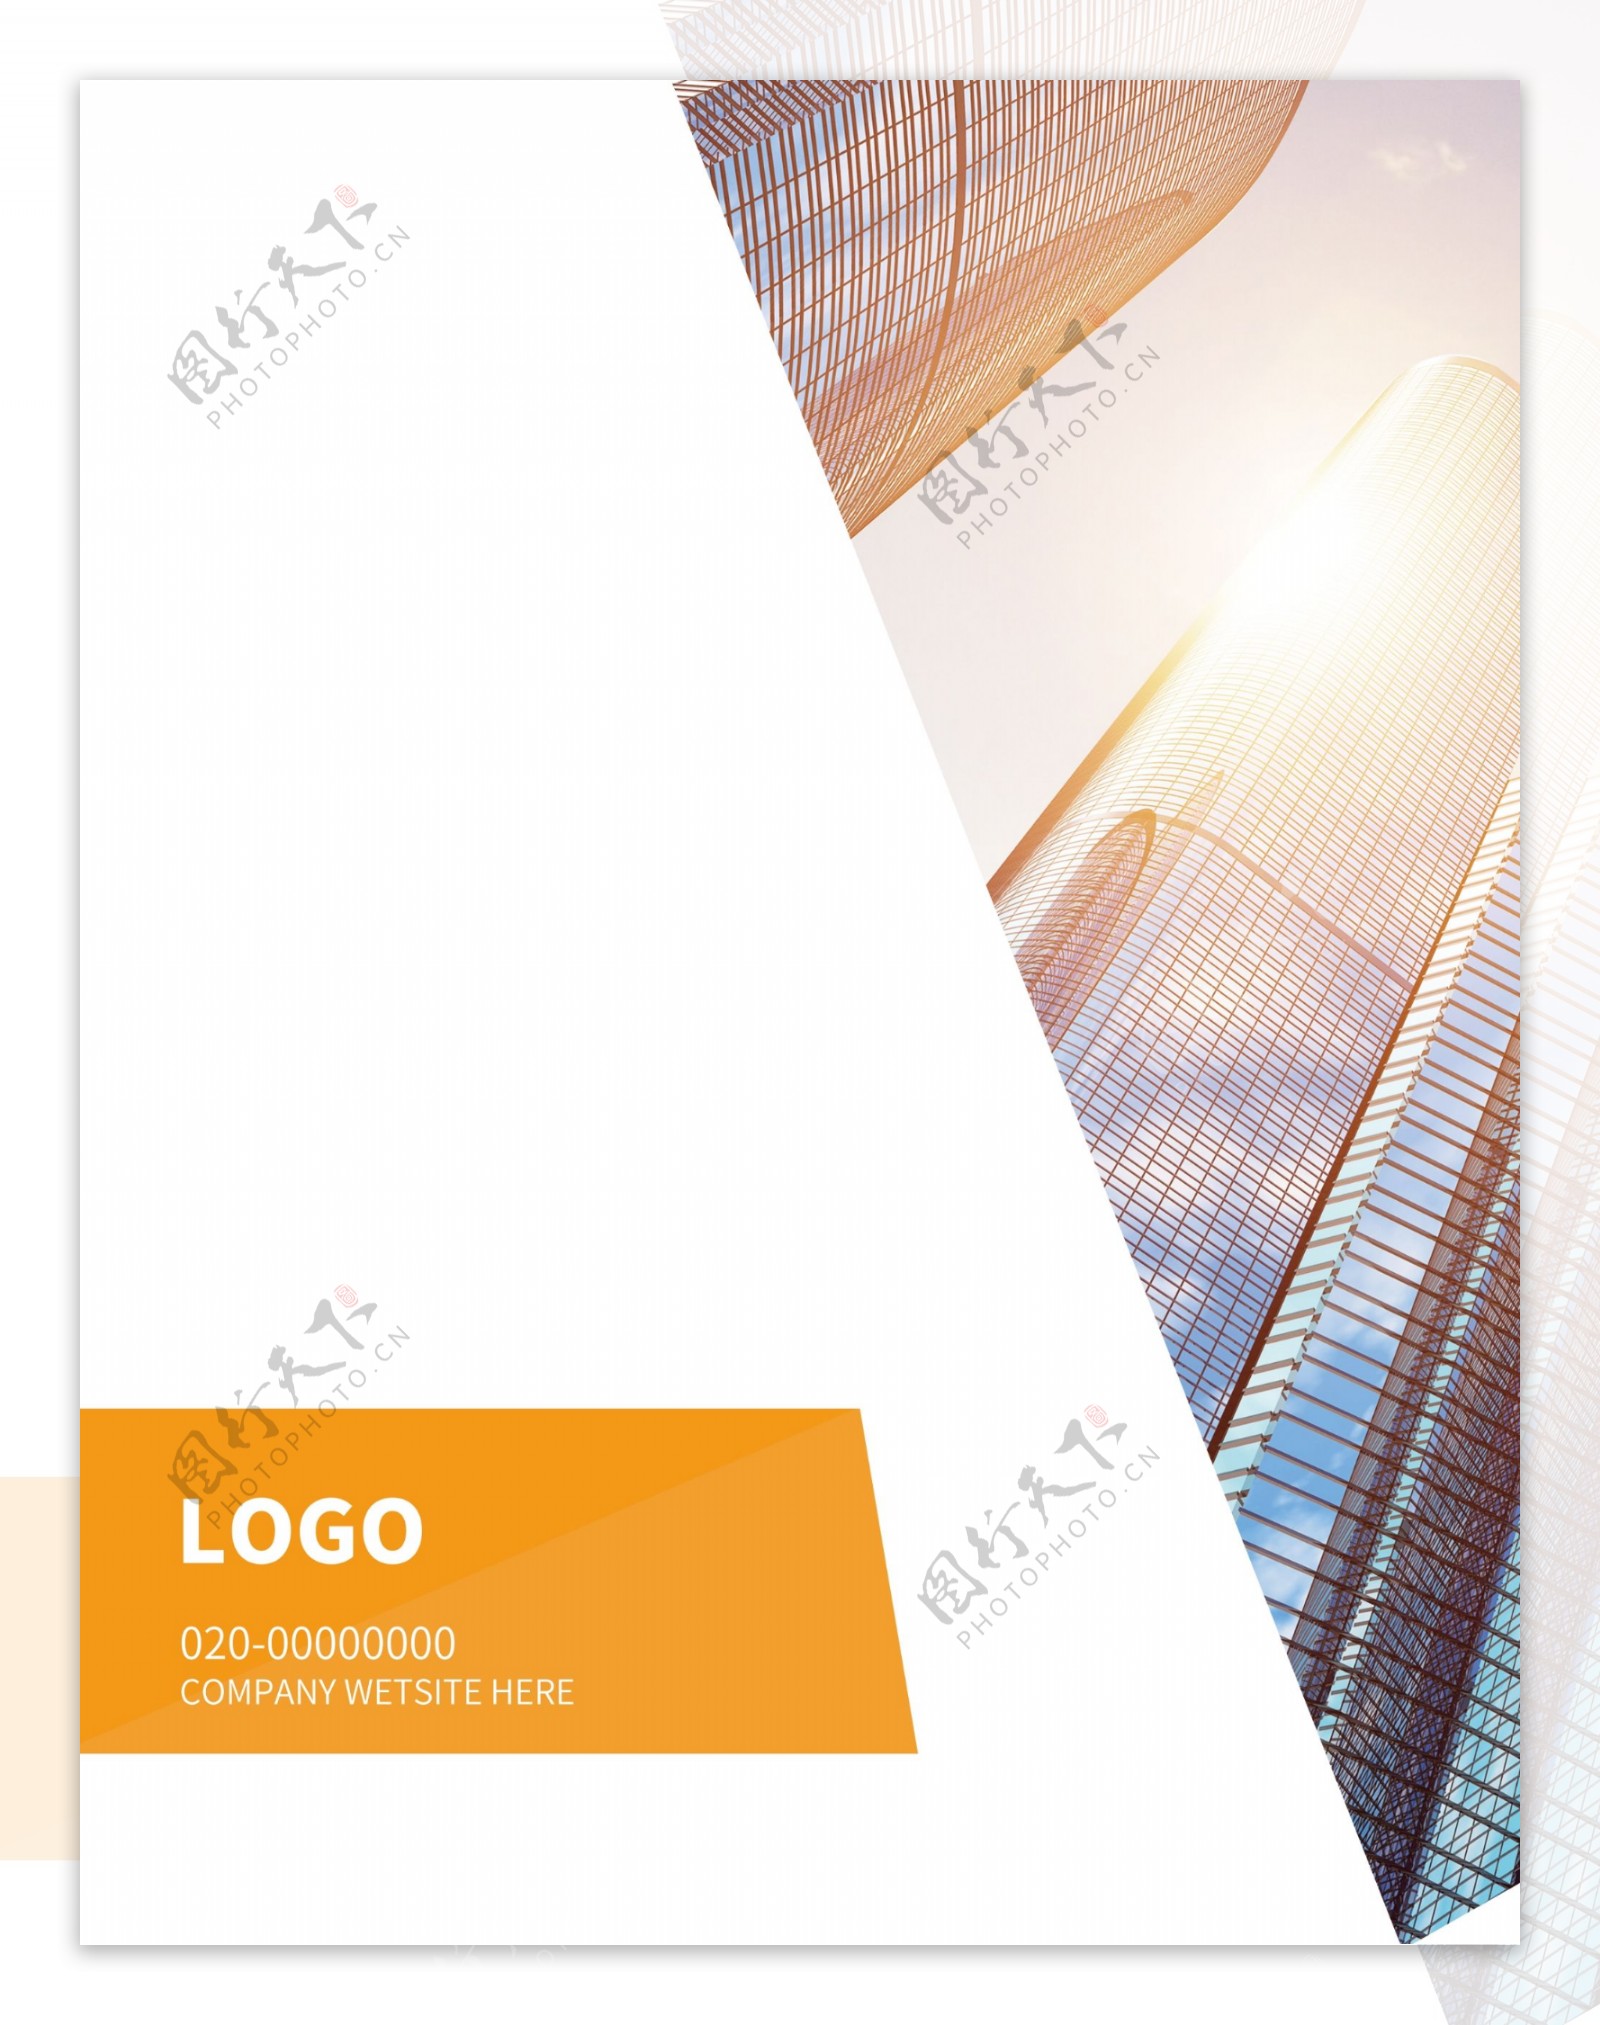 商务企业会议纪要手册封面设计